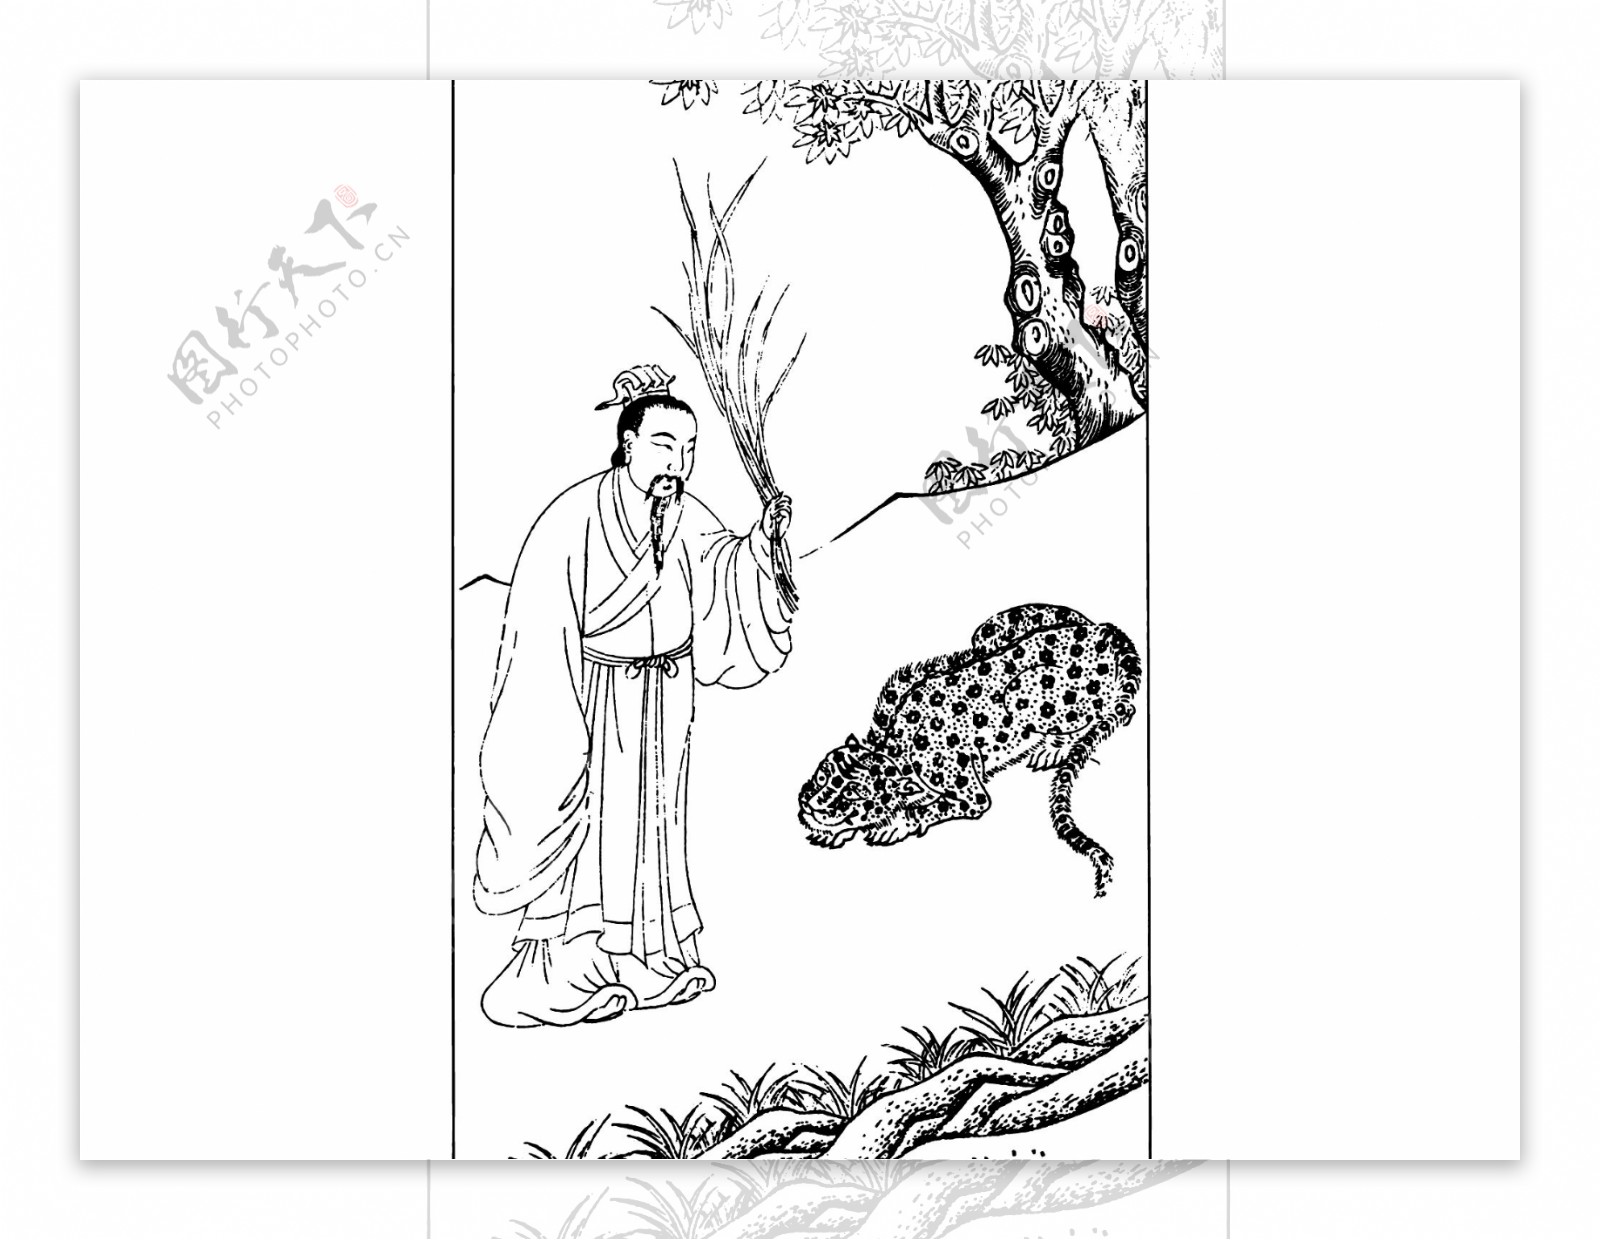 中国风古人物生活线稿插画素材133